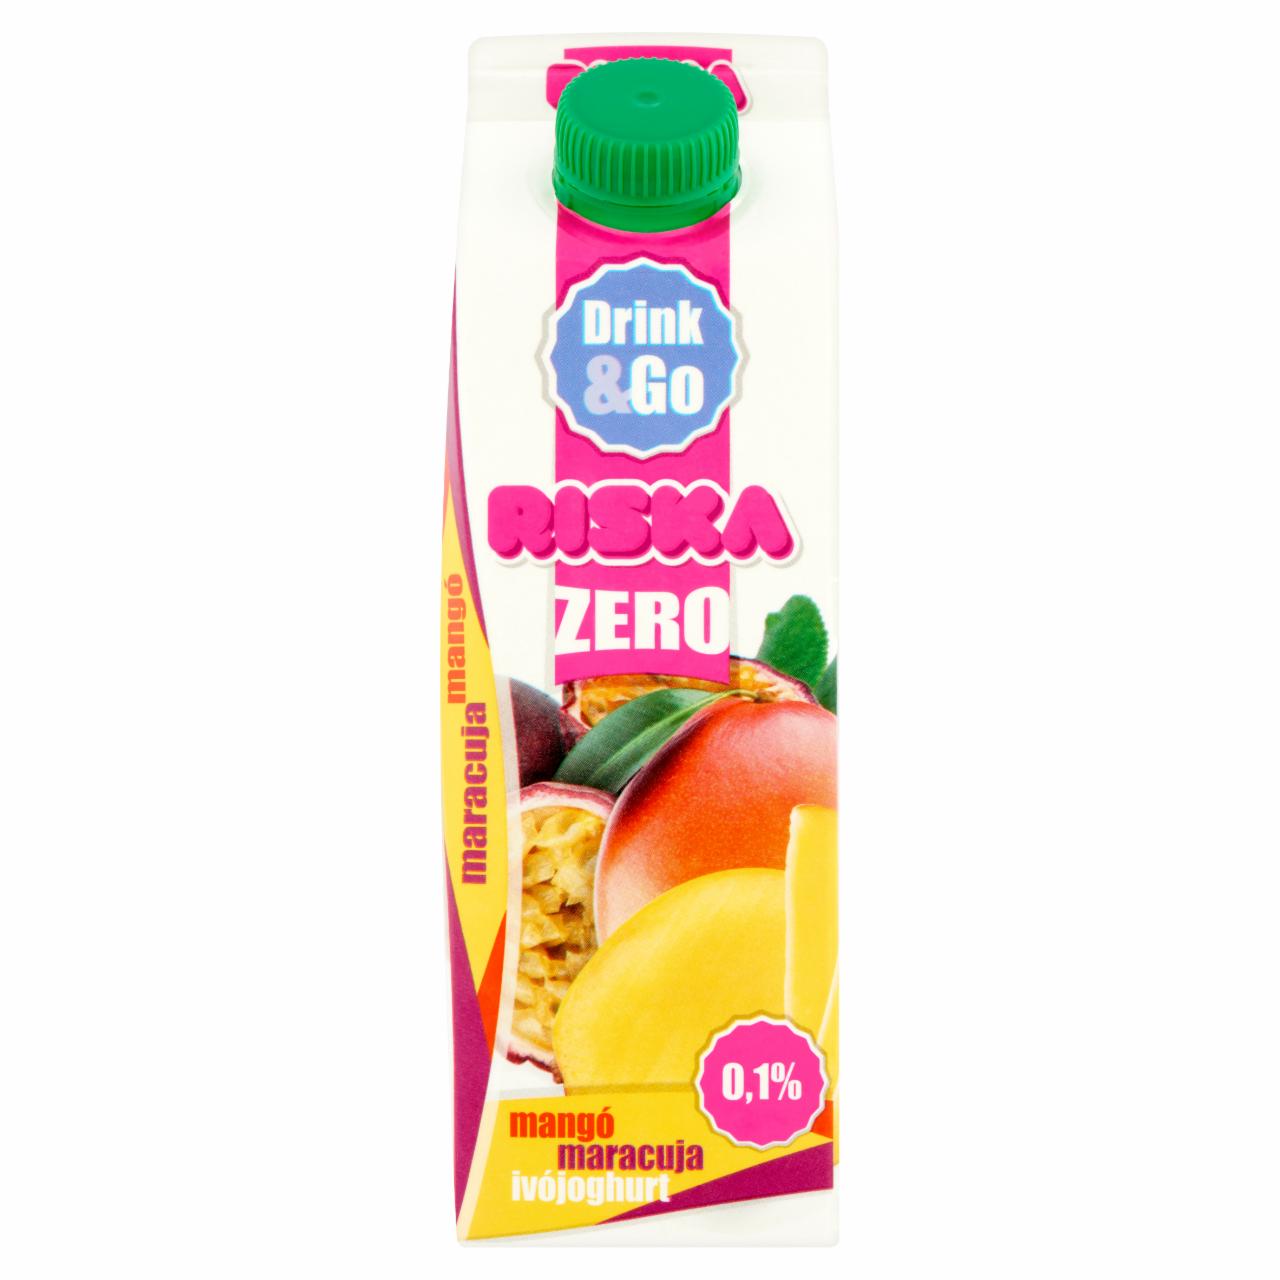 Képek - Riska Drink & Go Zero mangó-maracuja élőflórás, laktózmentes sovány ivójoghurt 450 g